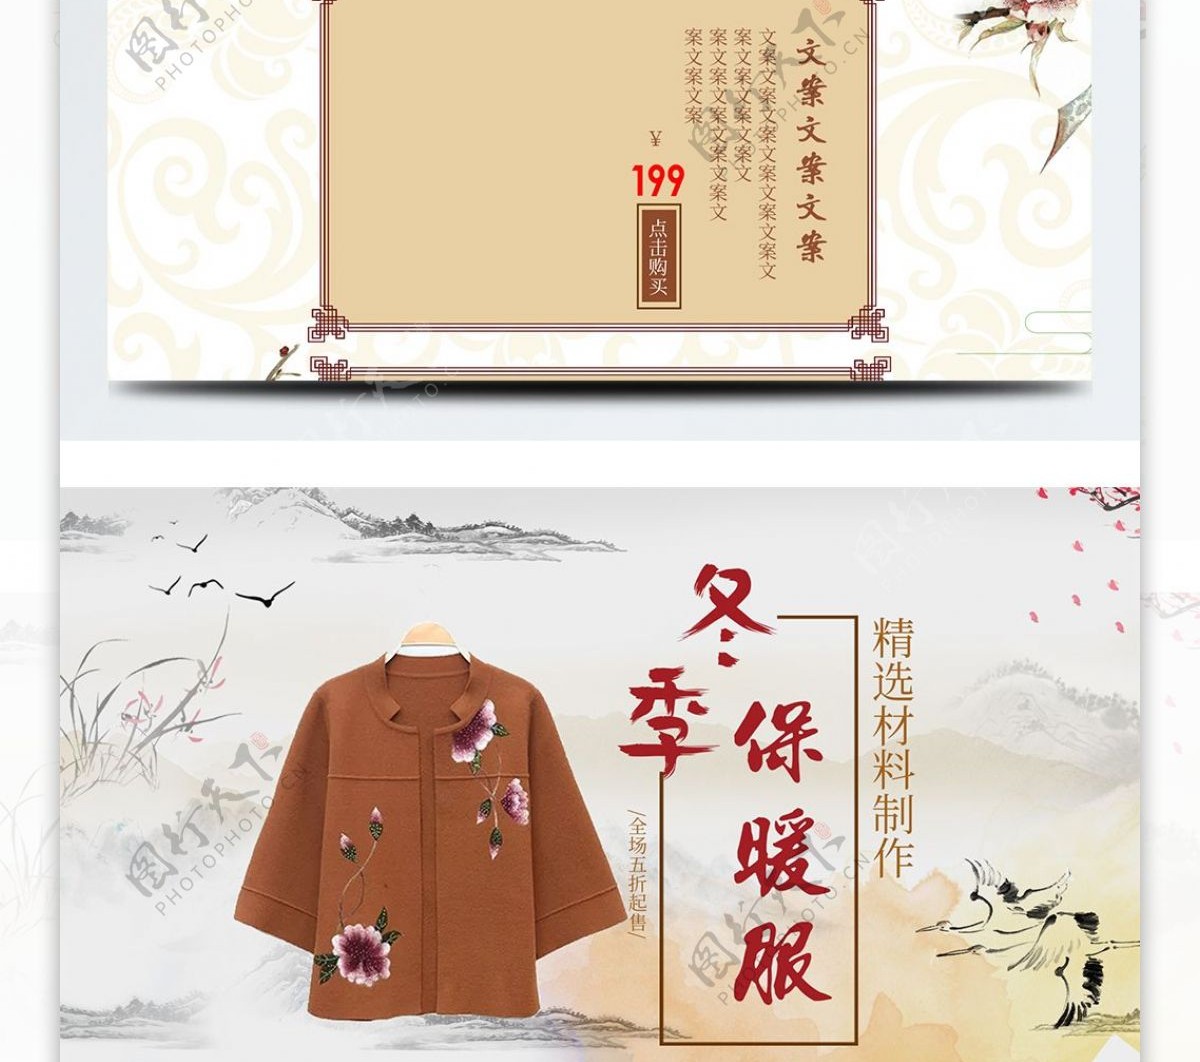 中国风冬季中老年保暖服装淘宝首页模板